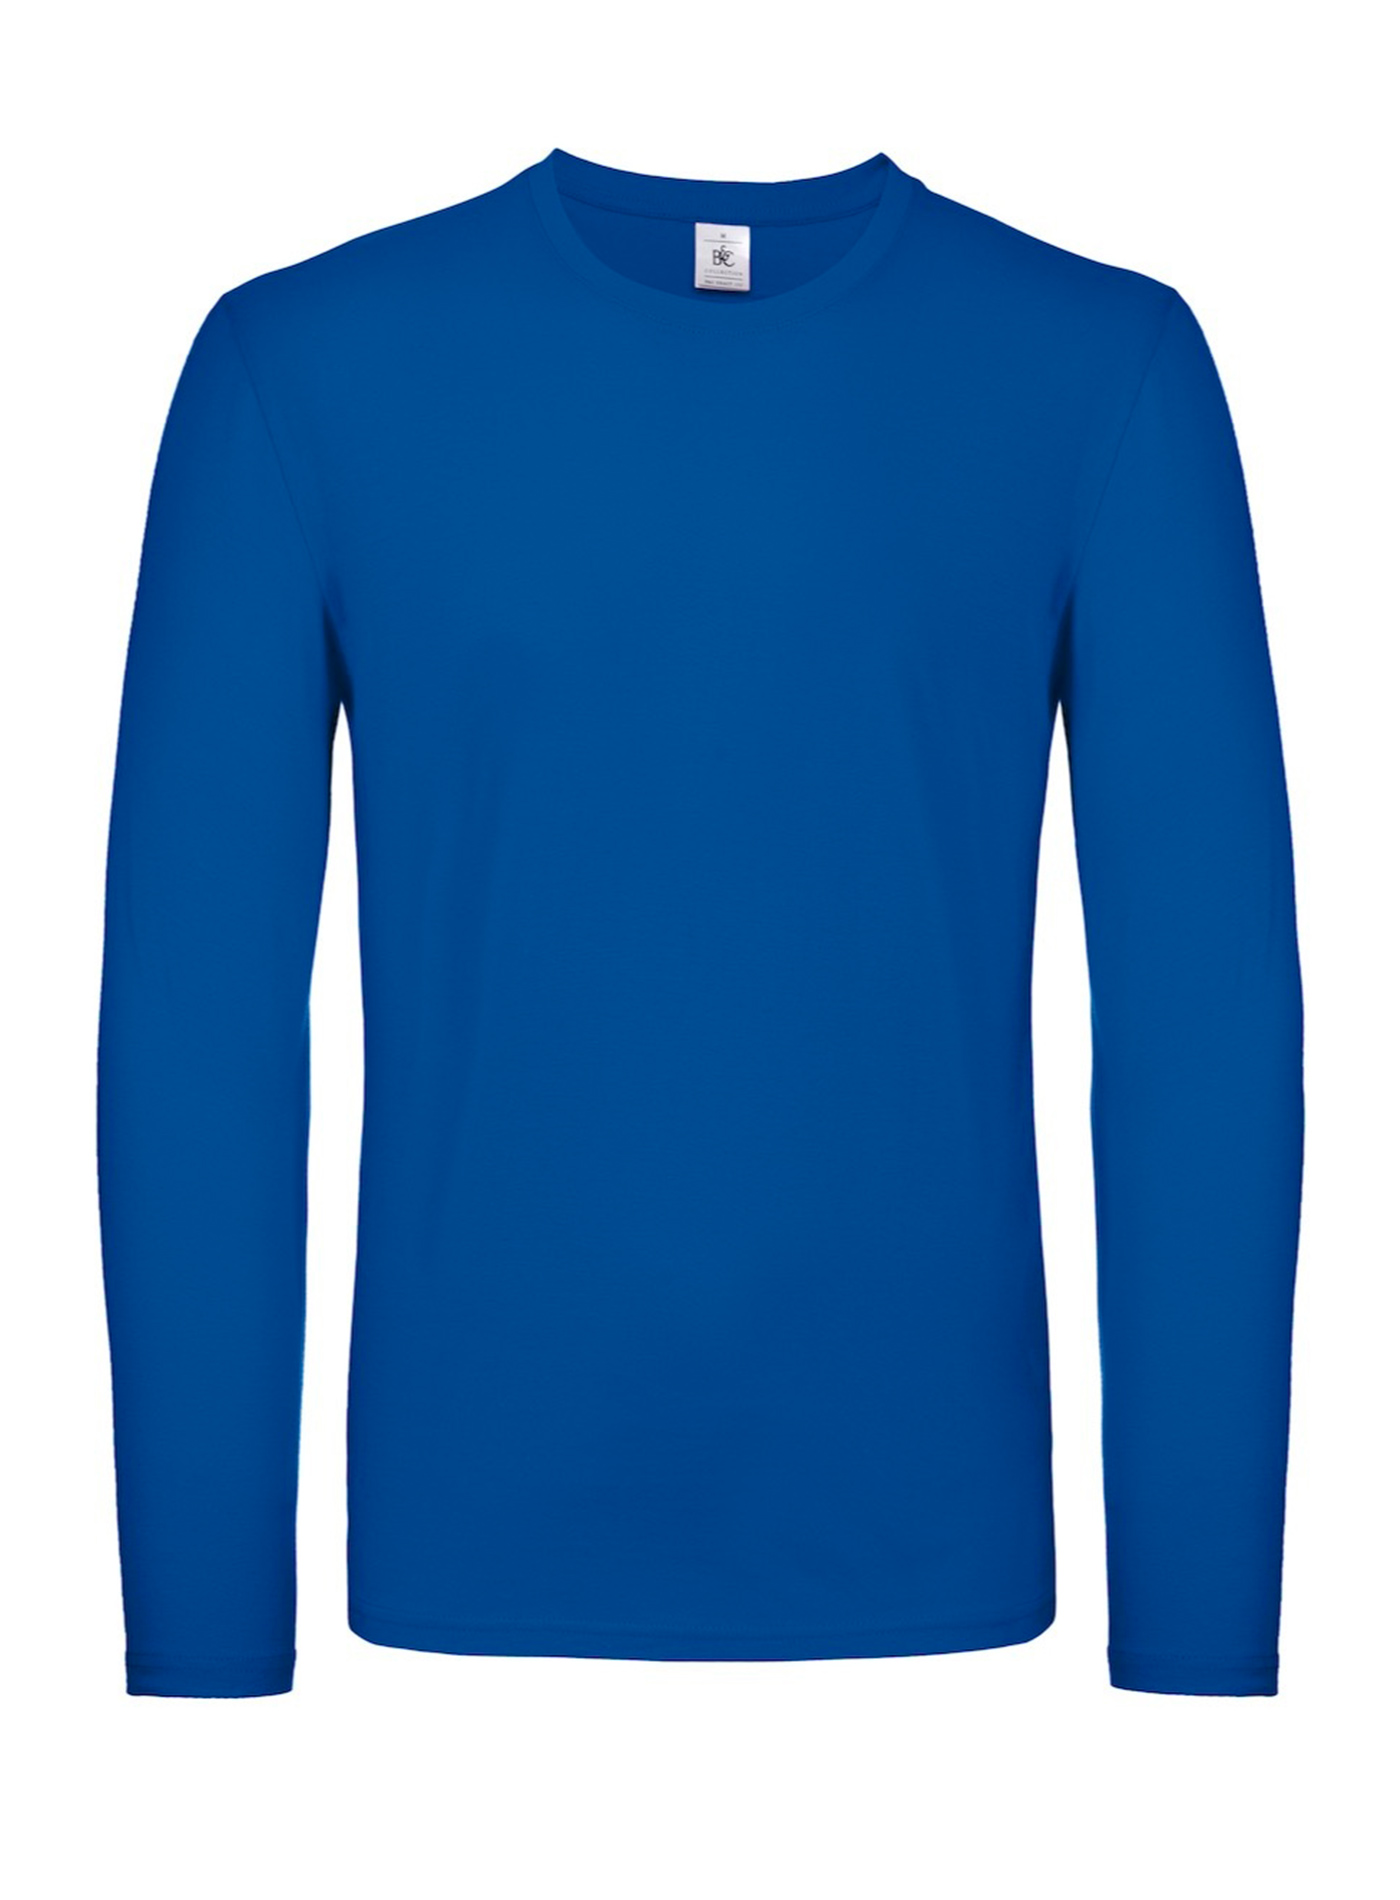 Tričko s dlouhým rukávem B&C Collection - královská modrá 3XL